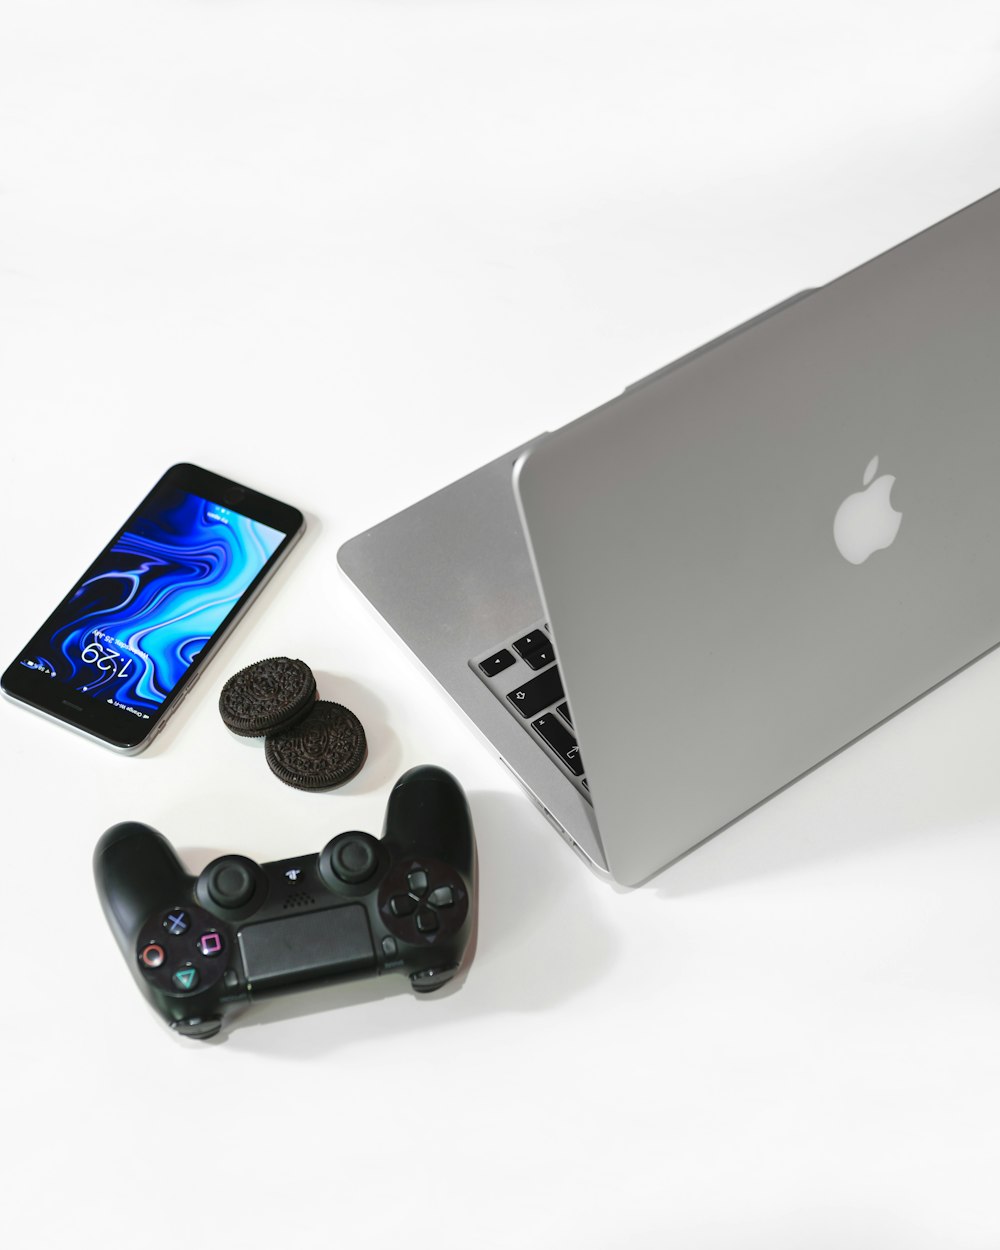 MacBook prateado ao lado do preto Sony game pad